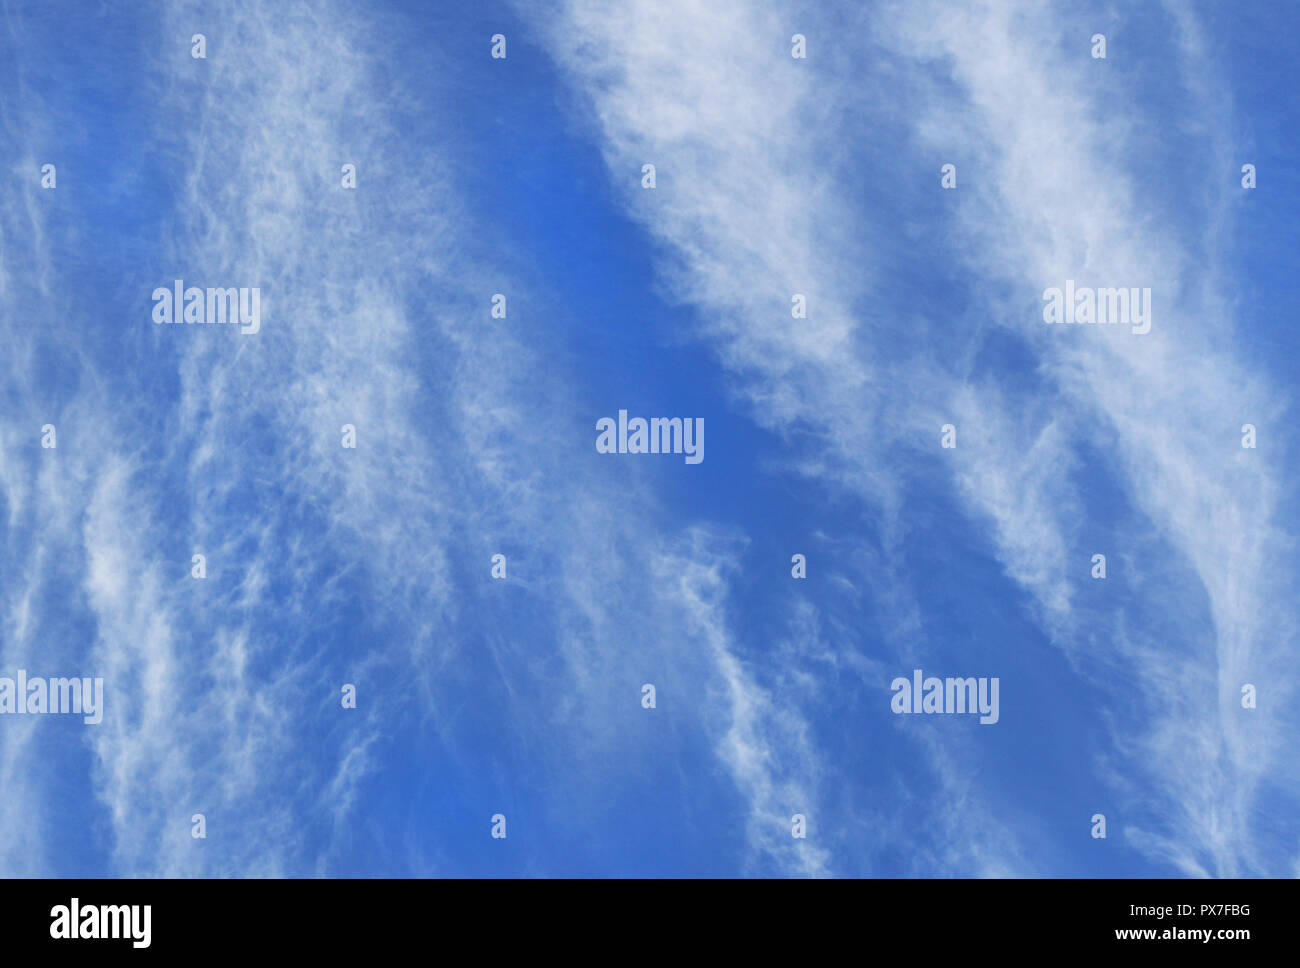 Weiß wispy Cirrus Wolken bilden in vertikaler Richtung gegen den tiefblauen Himmel Stockfoto